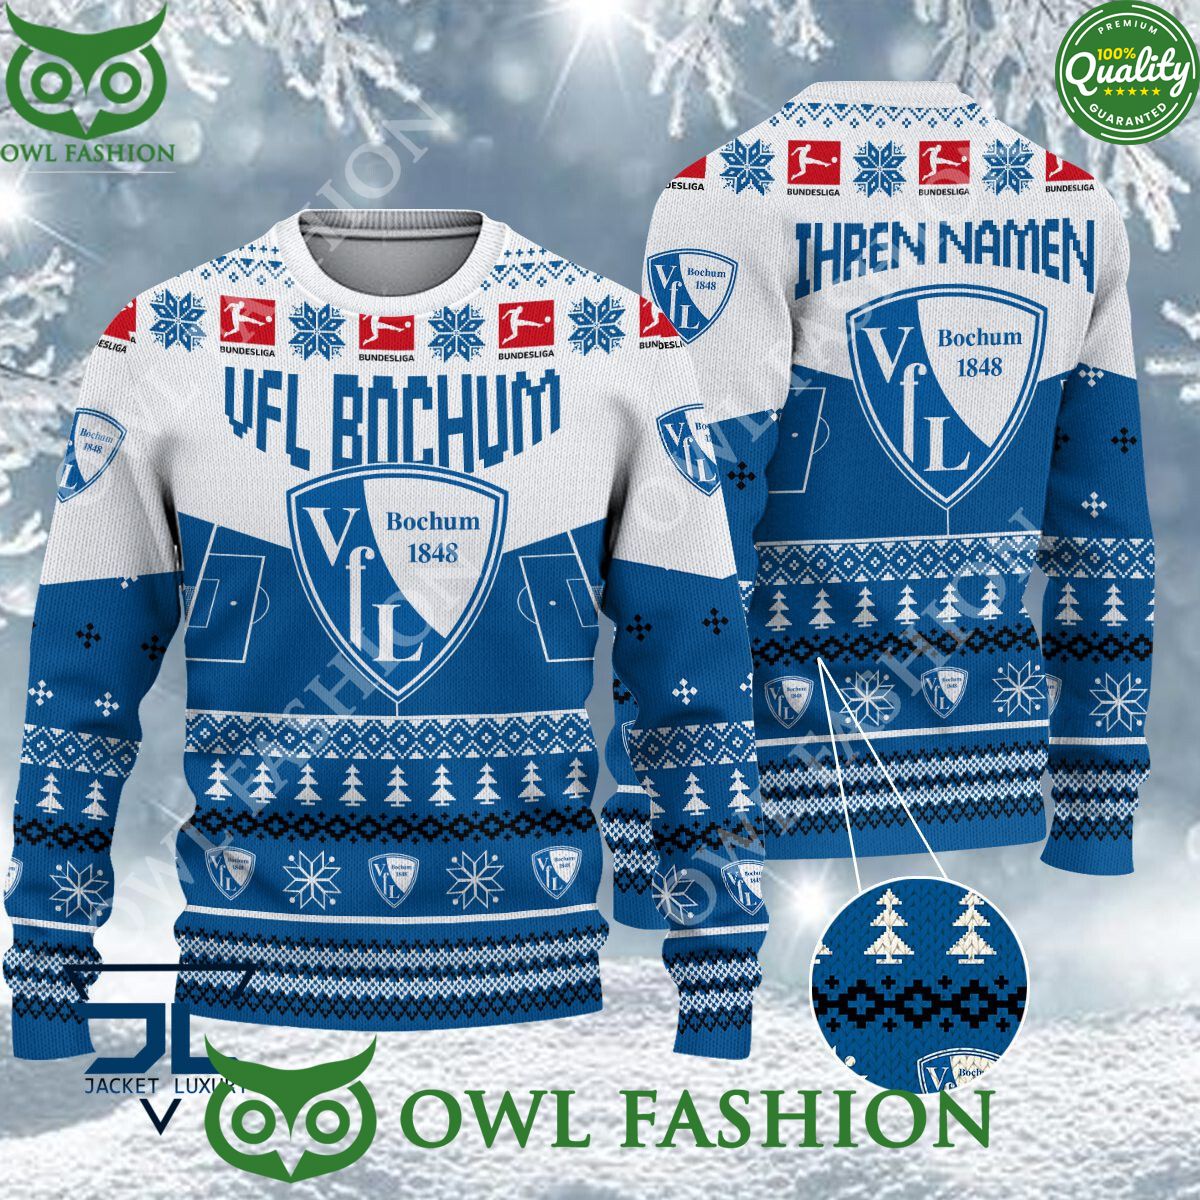 vfl bochum limited for bundesliga fans ugly sweater jumper 1 wjOFP.jpg